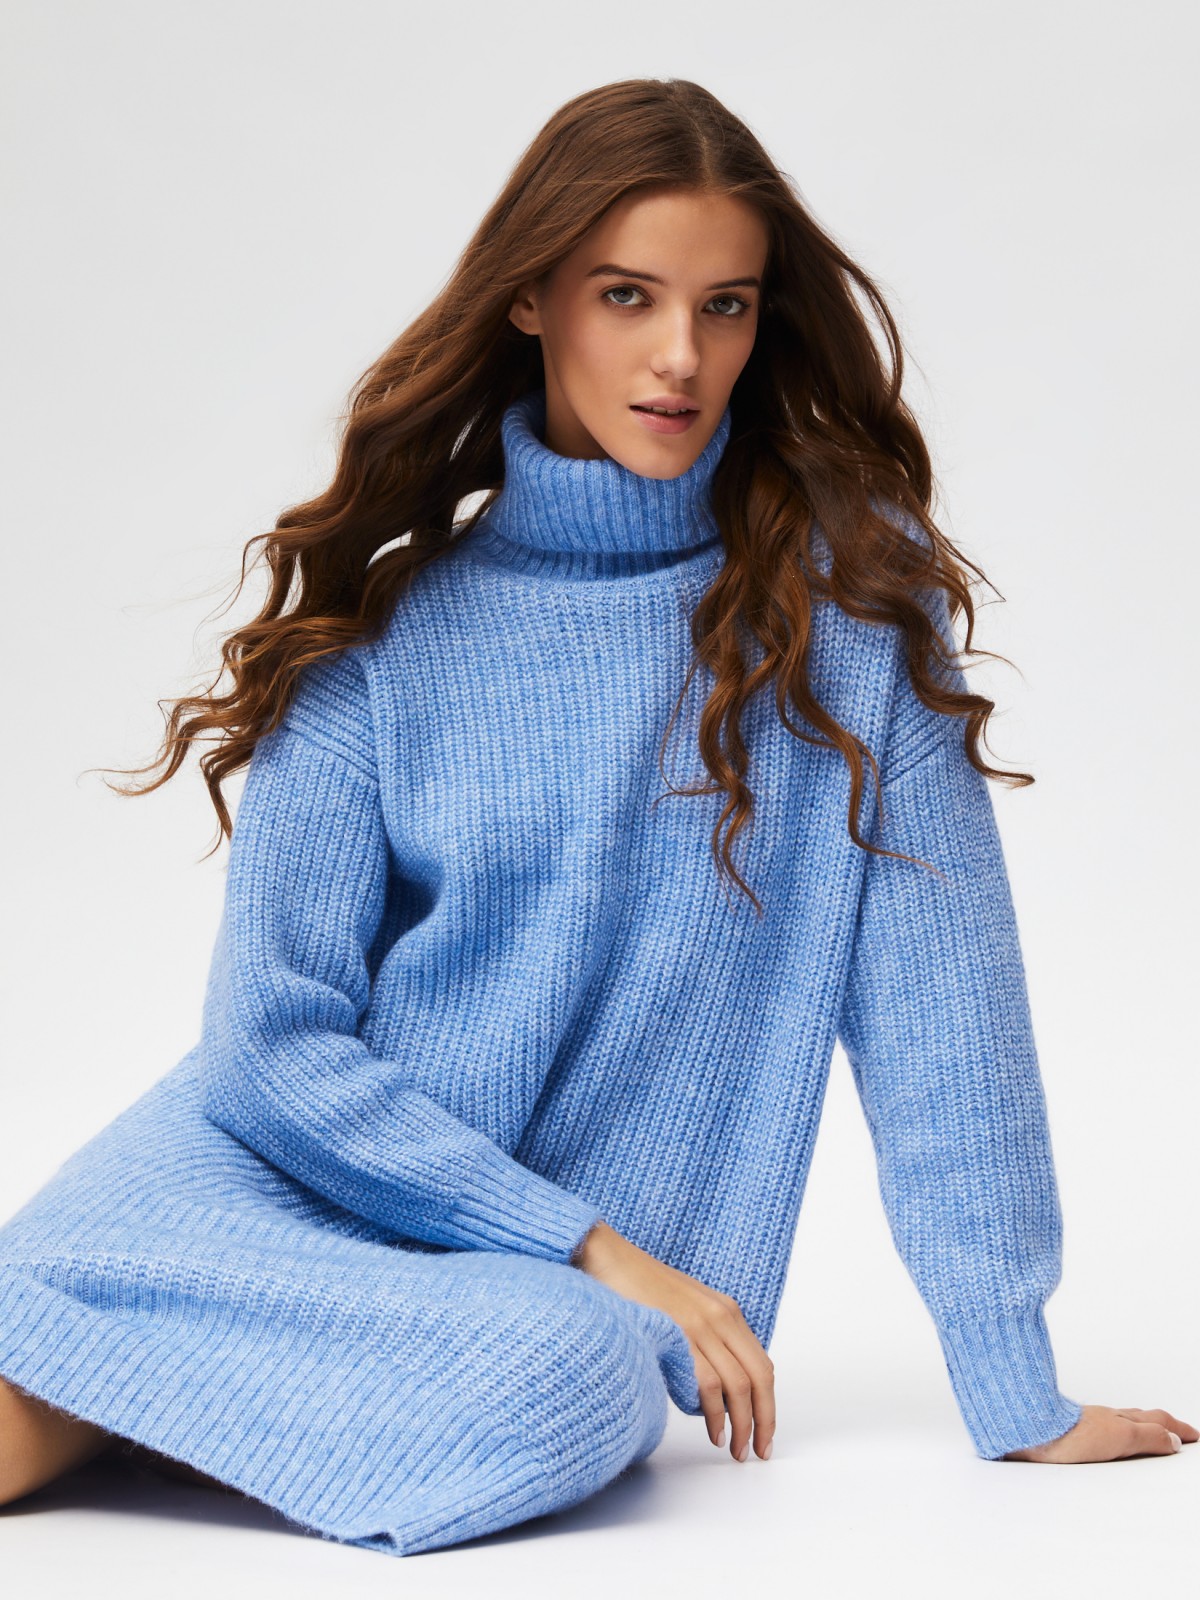 Вязаное платье-свитер длины миди с высоким горлом zolla 023428493013, цвет голубой, размер XS